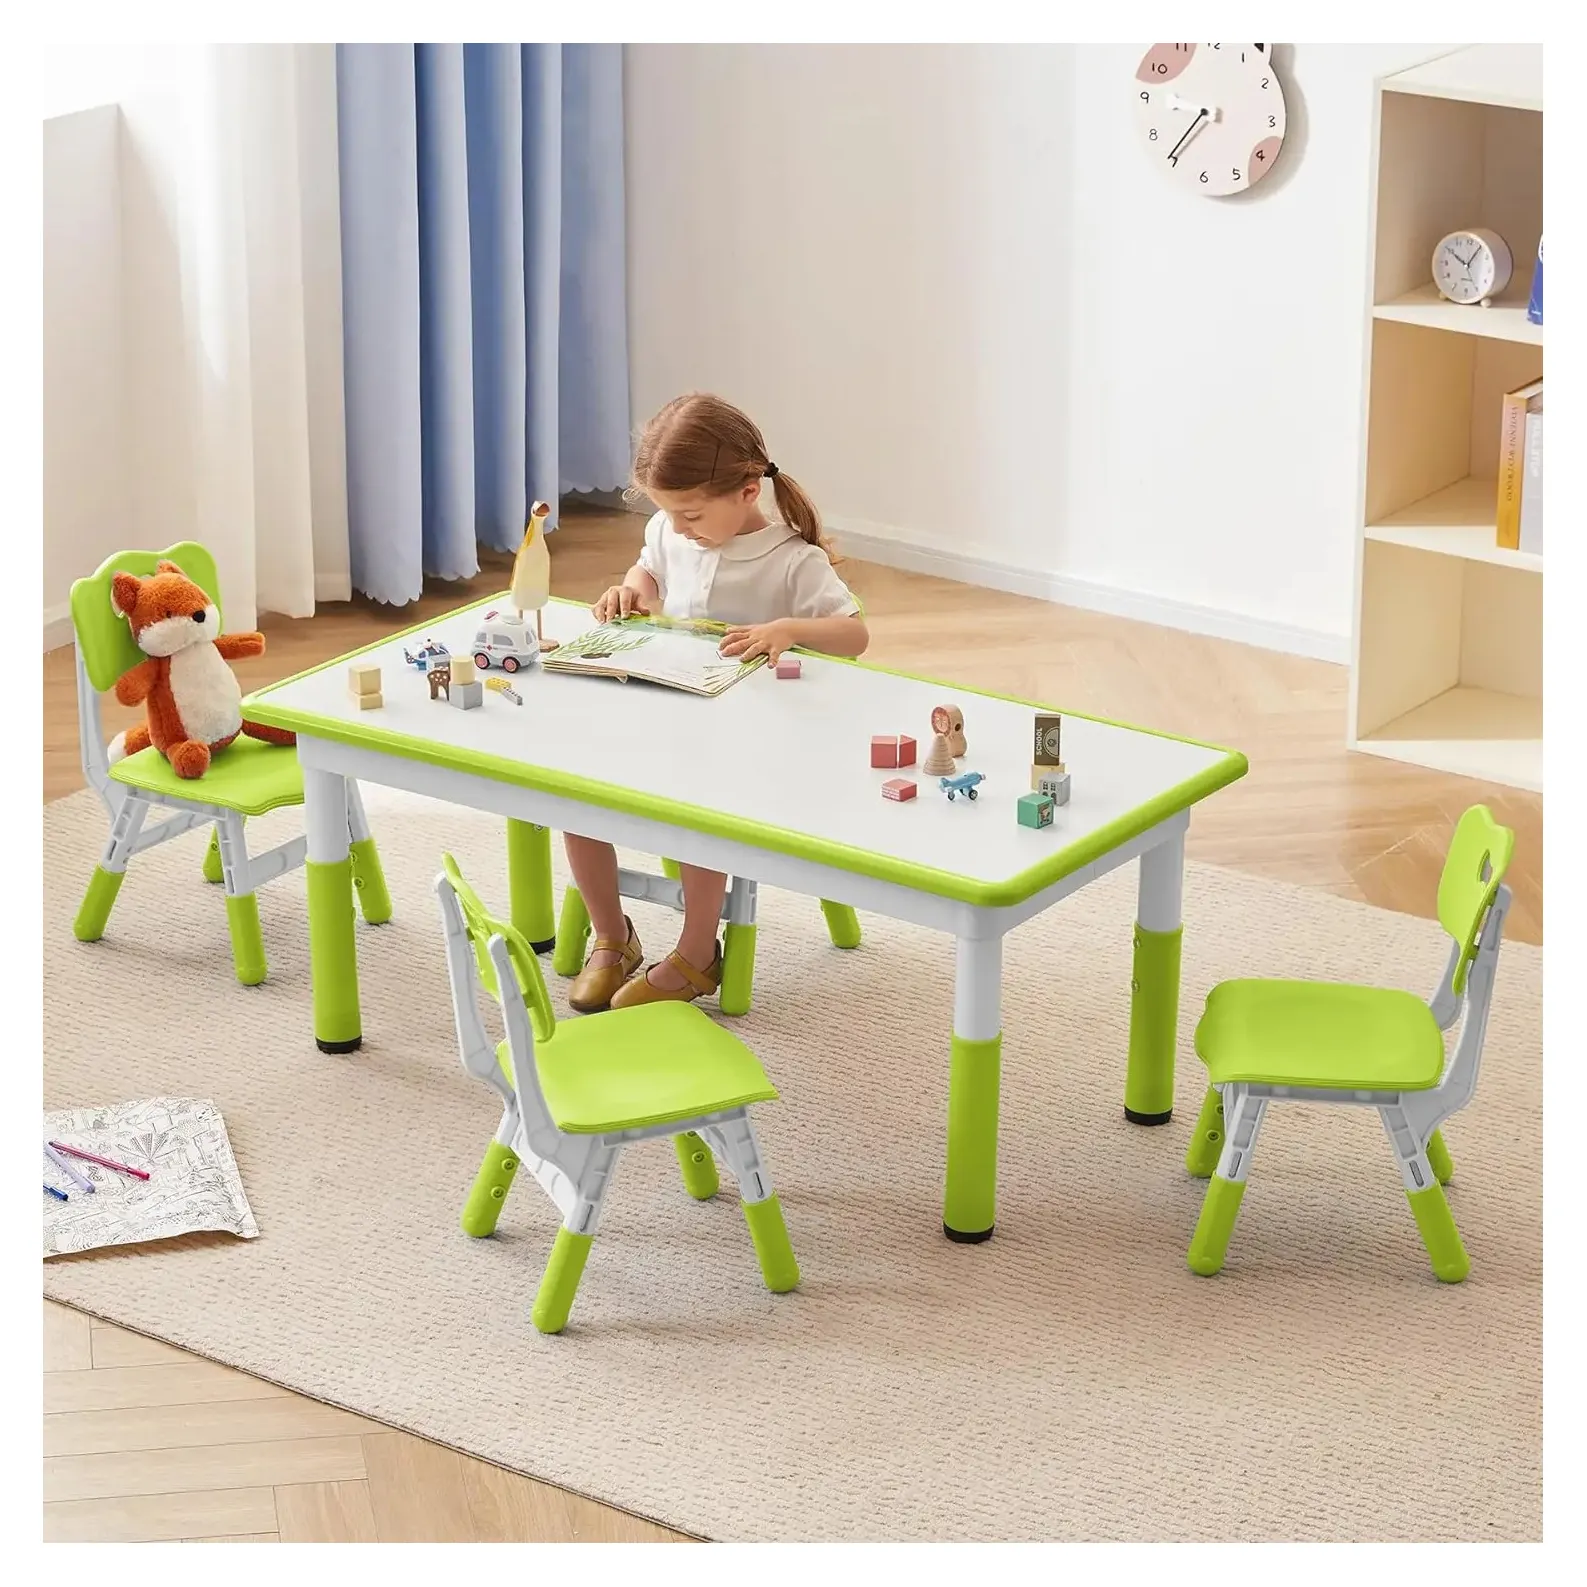 مجموعة طاولة وأربعة كراسي للأطفال طاولة مع مقعد للأطفال بارتفاع قابل للتعديل طاولة مكتب رسم جرافتيي طاولة دراسة منزلية / غرفة صف